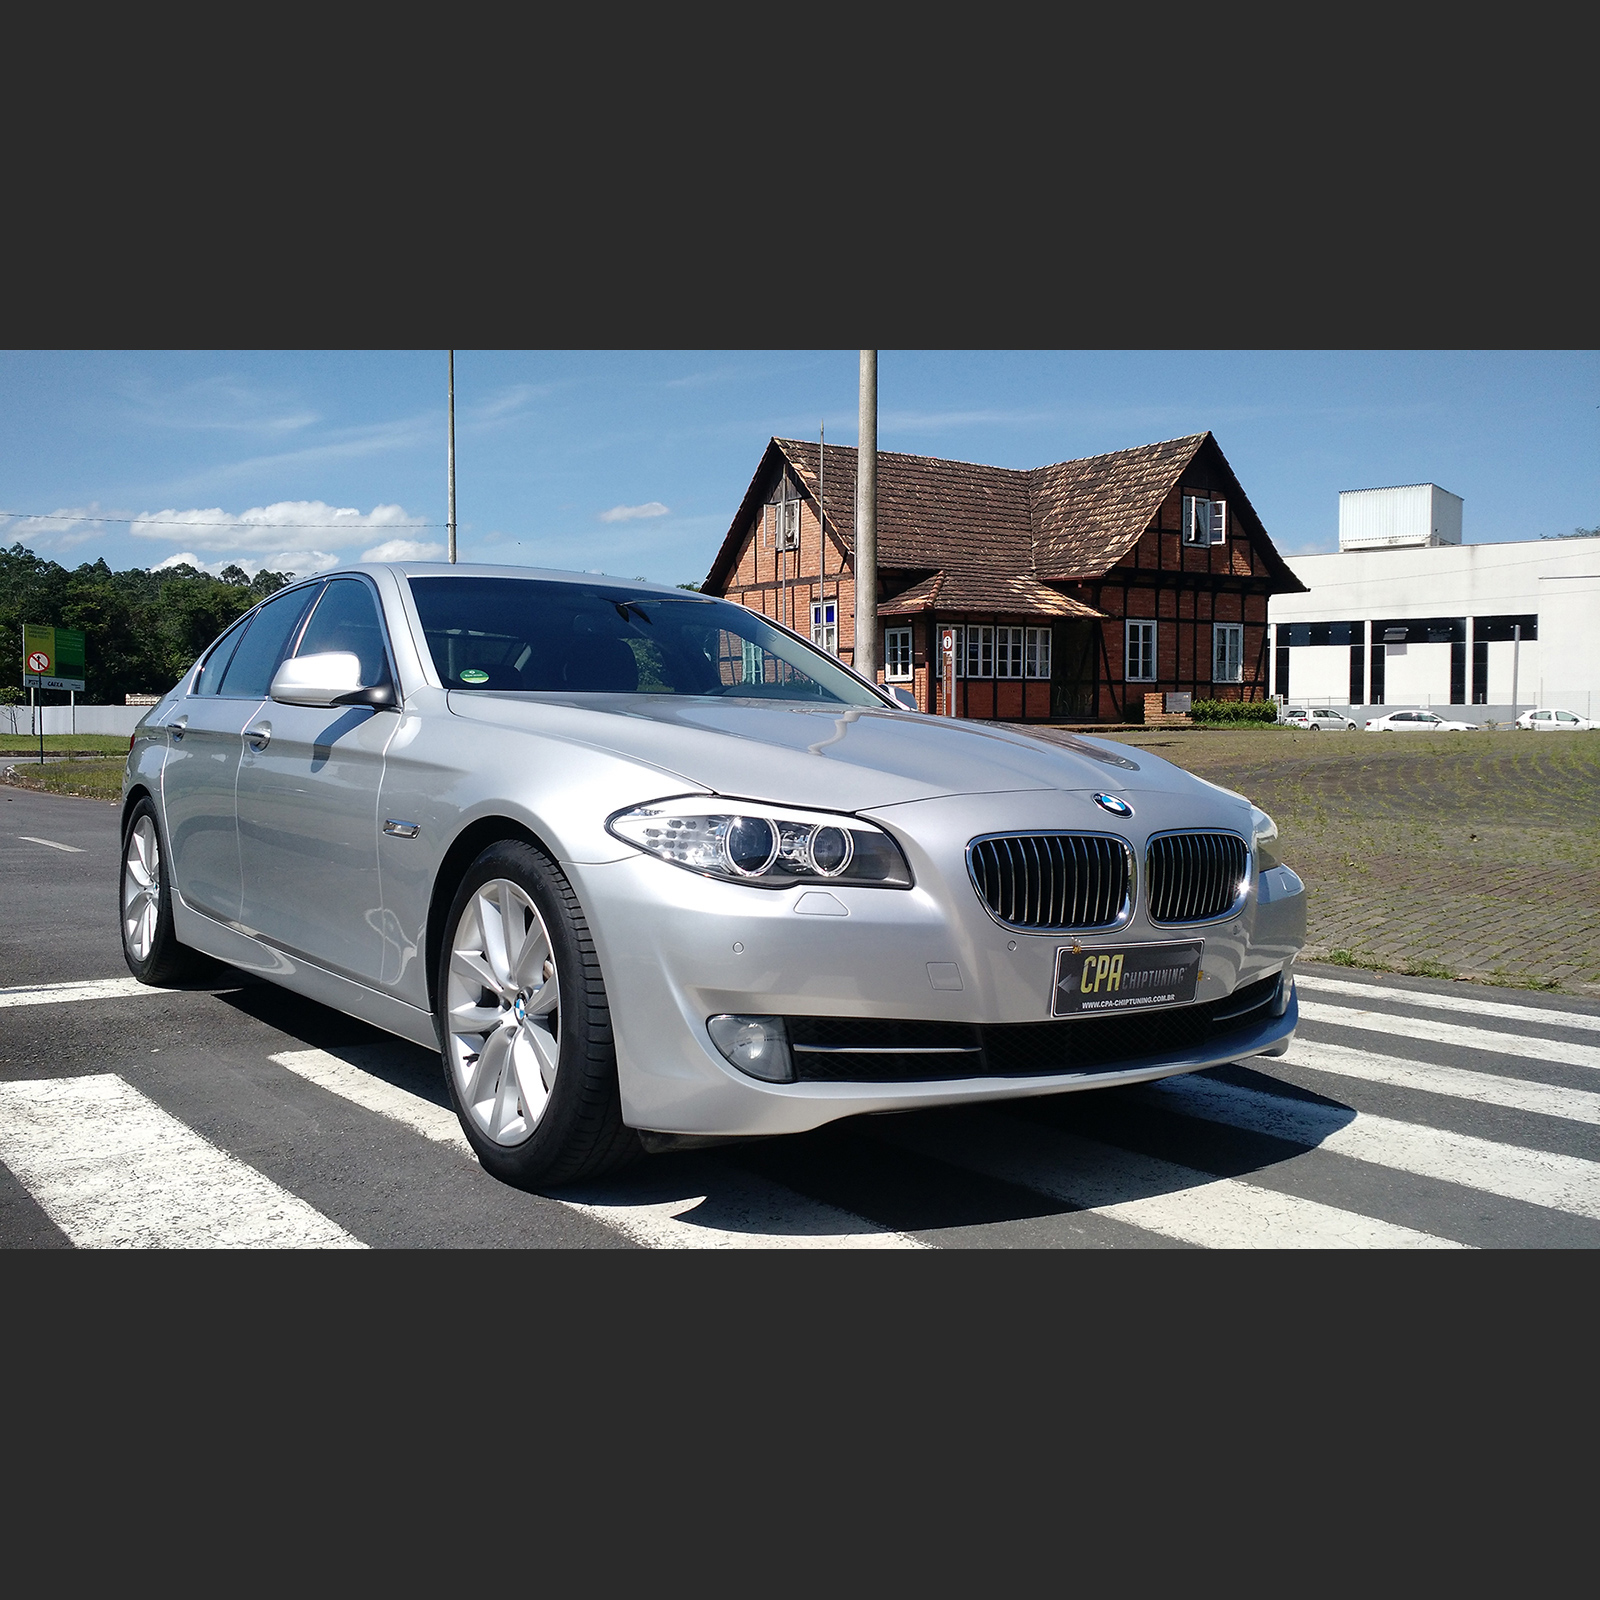 I testet: BMW (F10) 550i